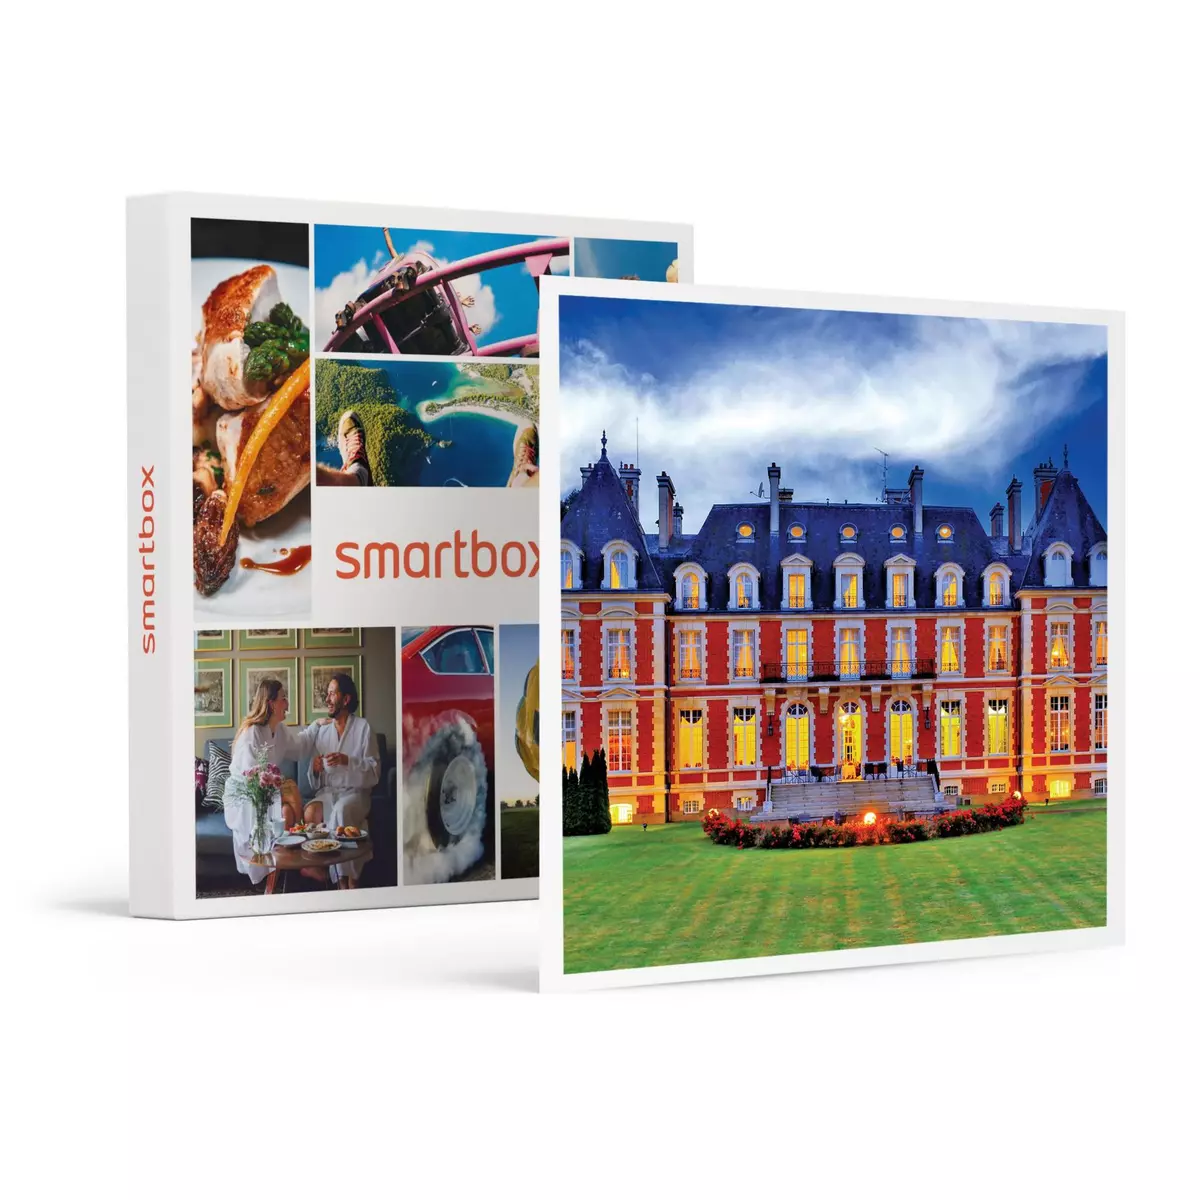 Smartbox Séjour romantique : 2 jours de luxe dans un château près de Limoges - Coffret Cadeau Séjour